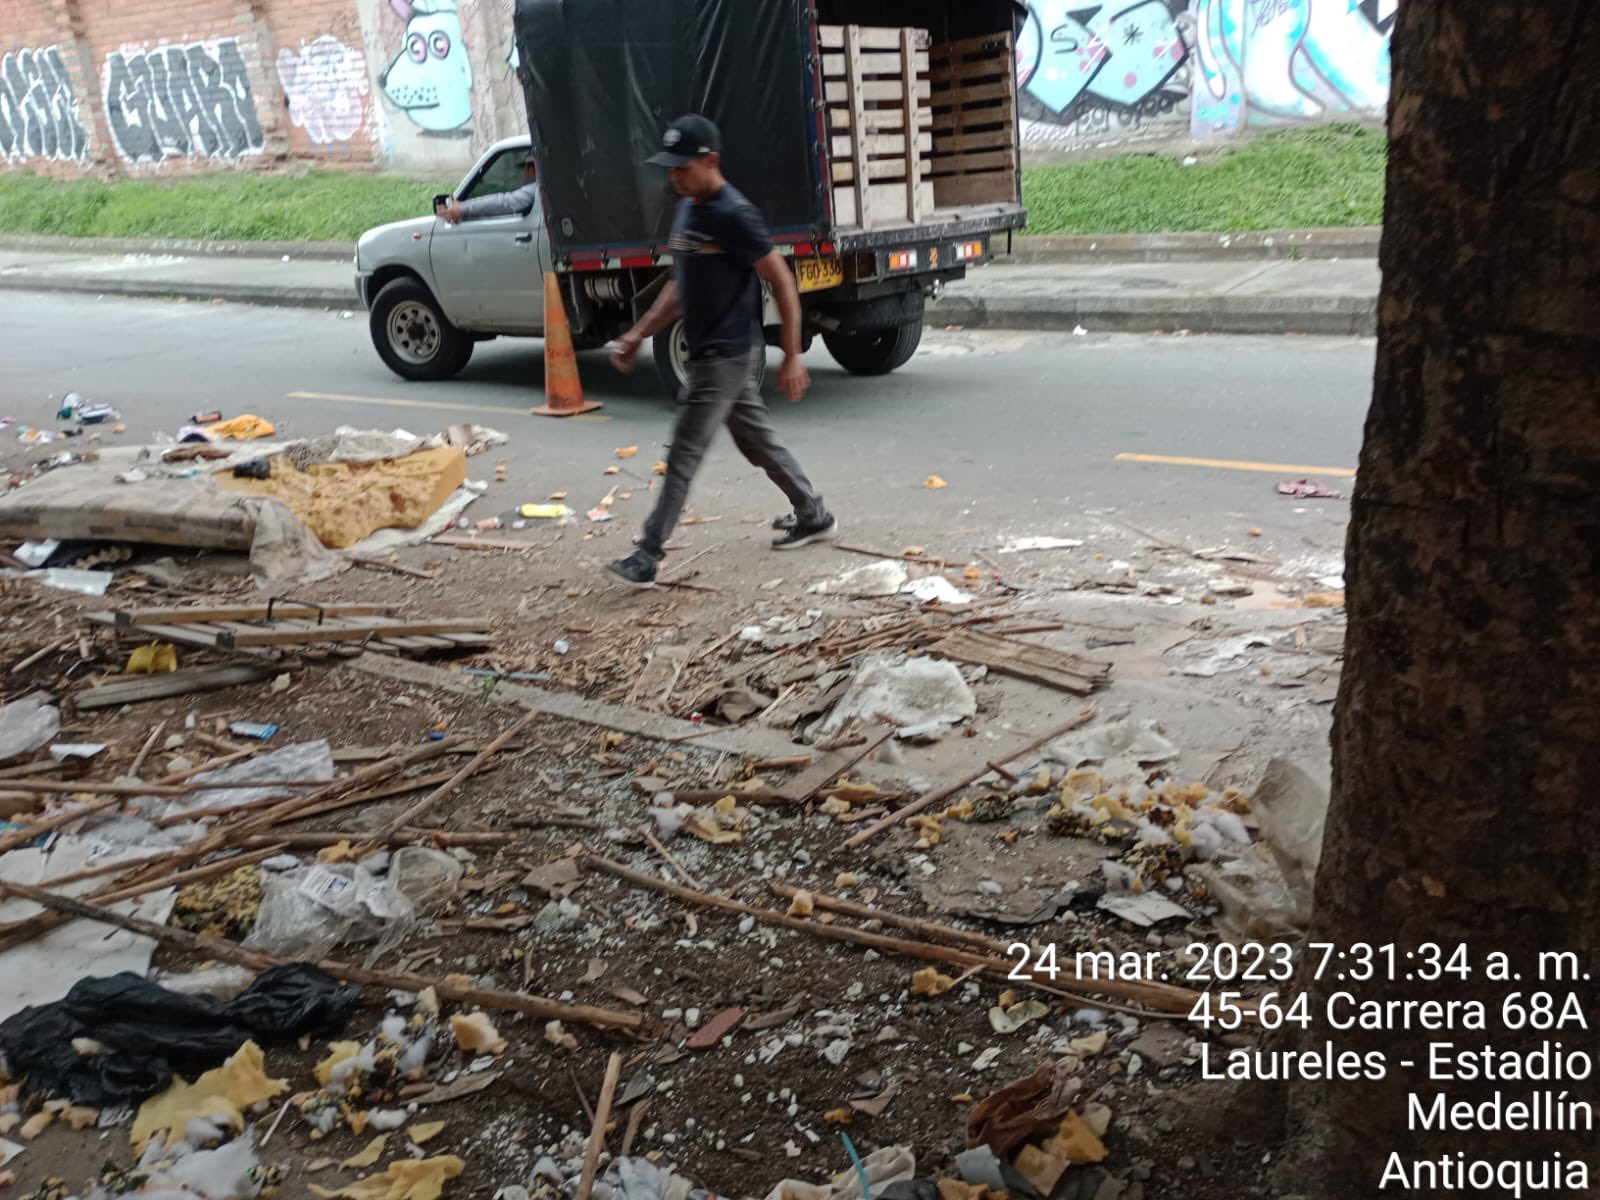 ¡Lleve su multa! Los capturaron infraganti tirando escombros en Medellín